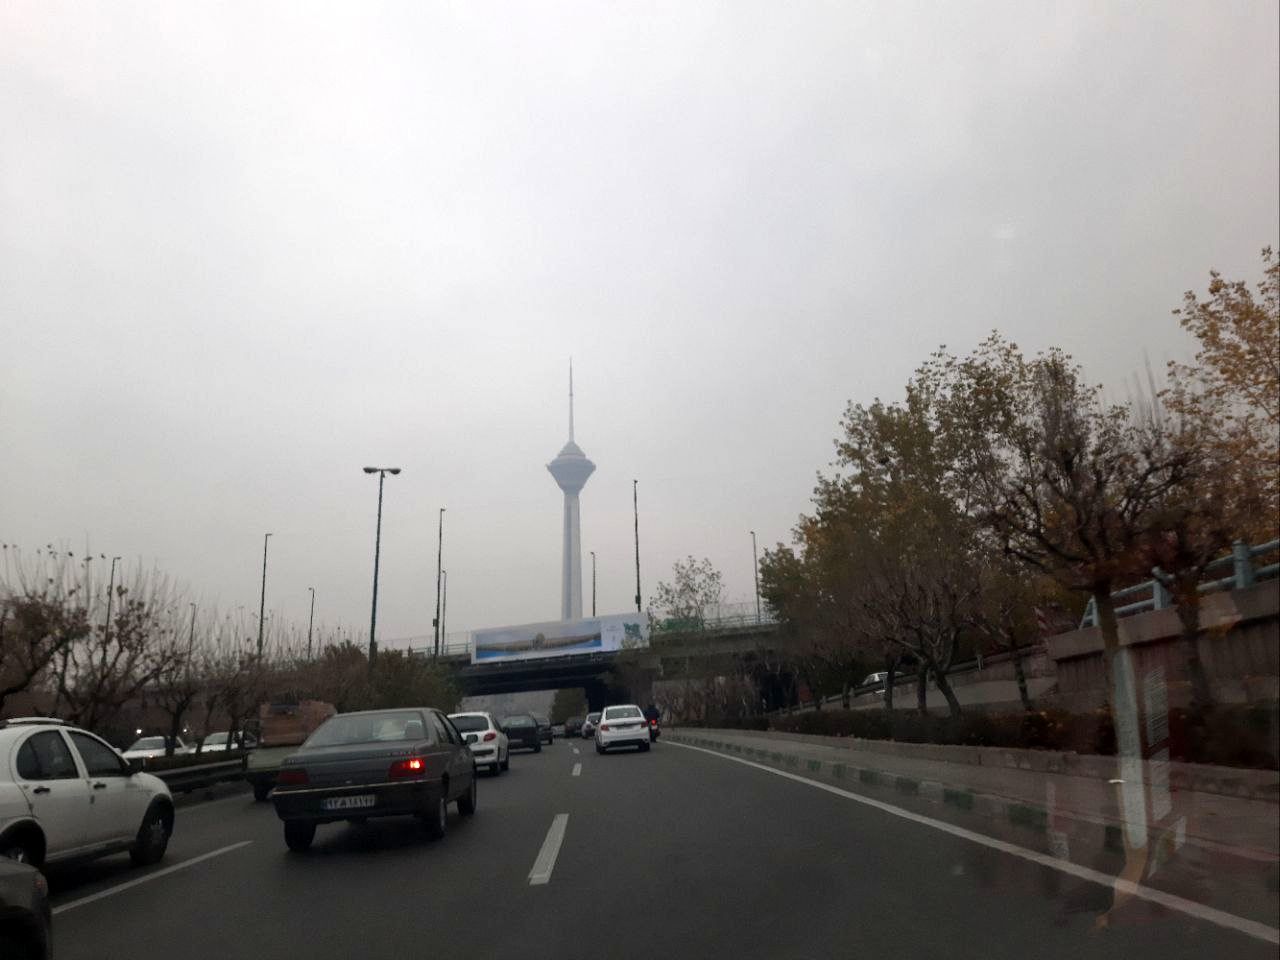 هشدار؛ هوای تهران در وضعیت قرمز